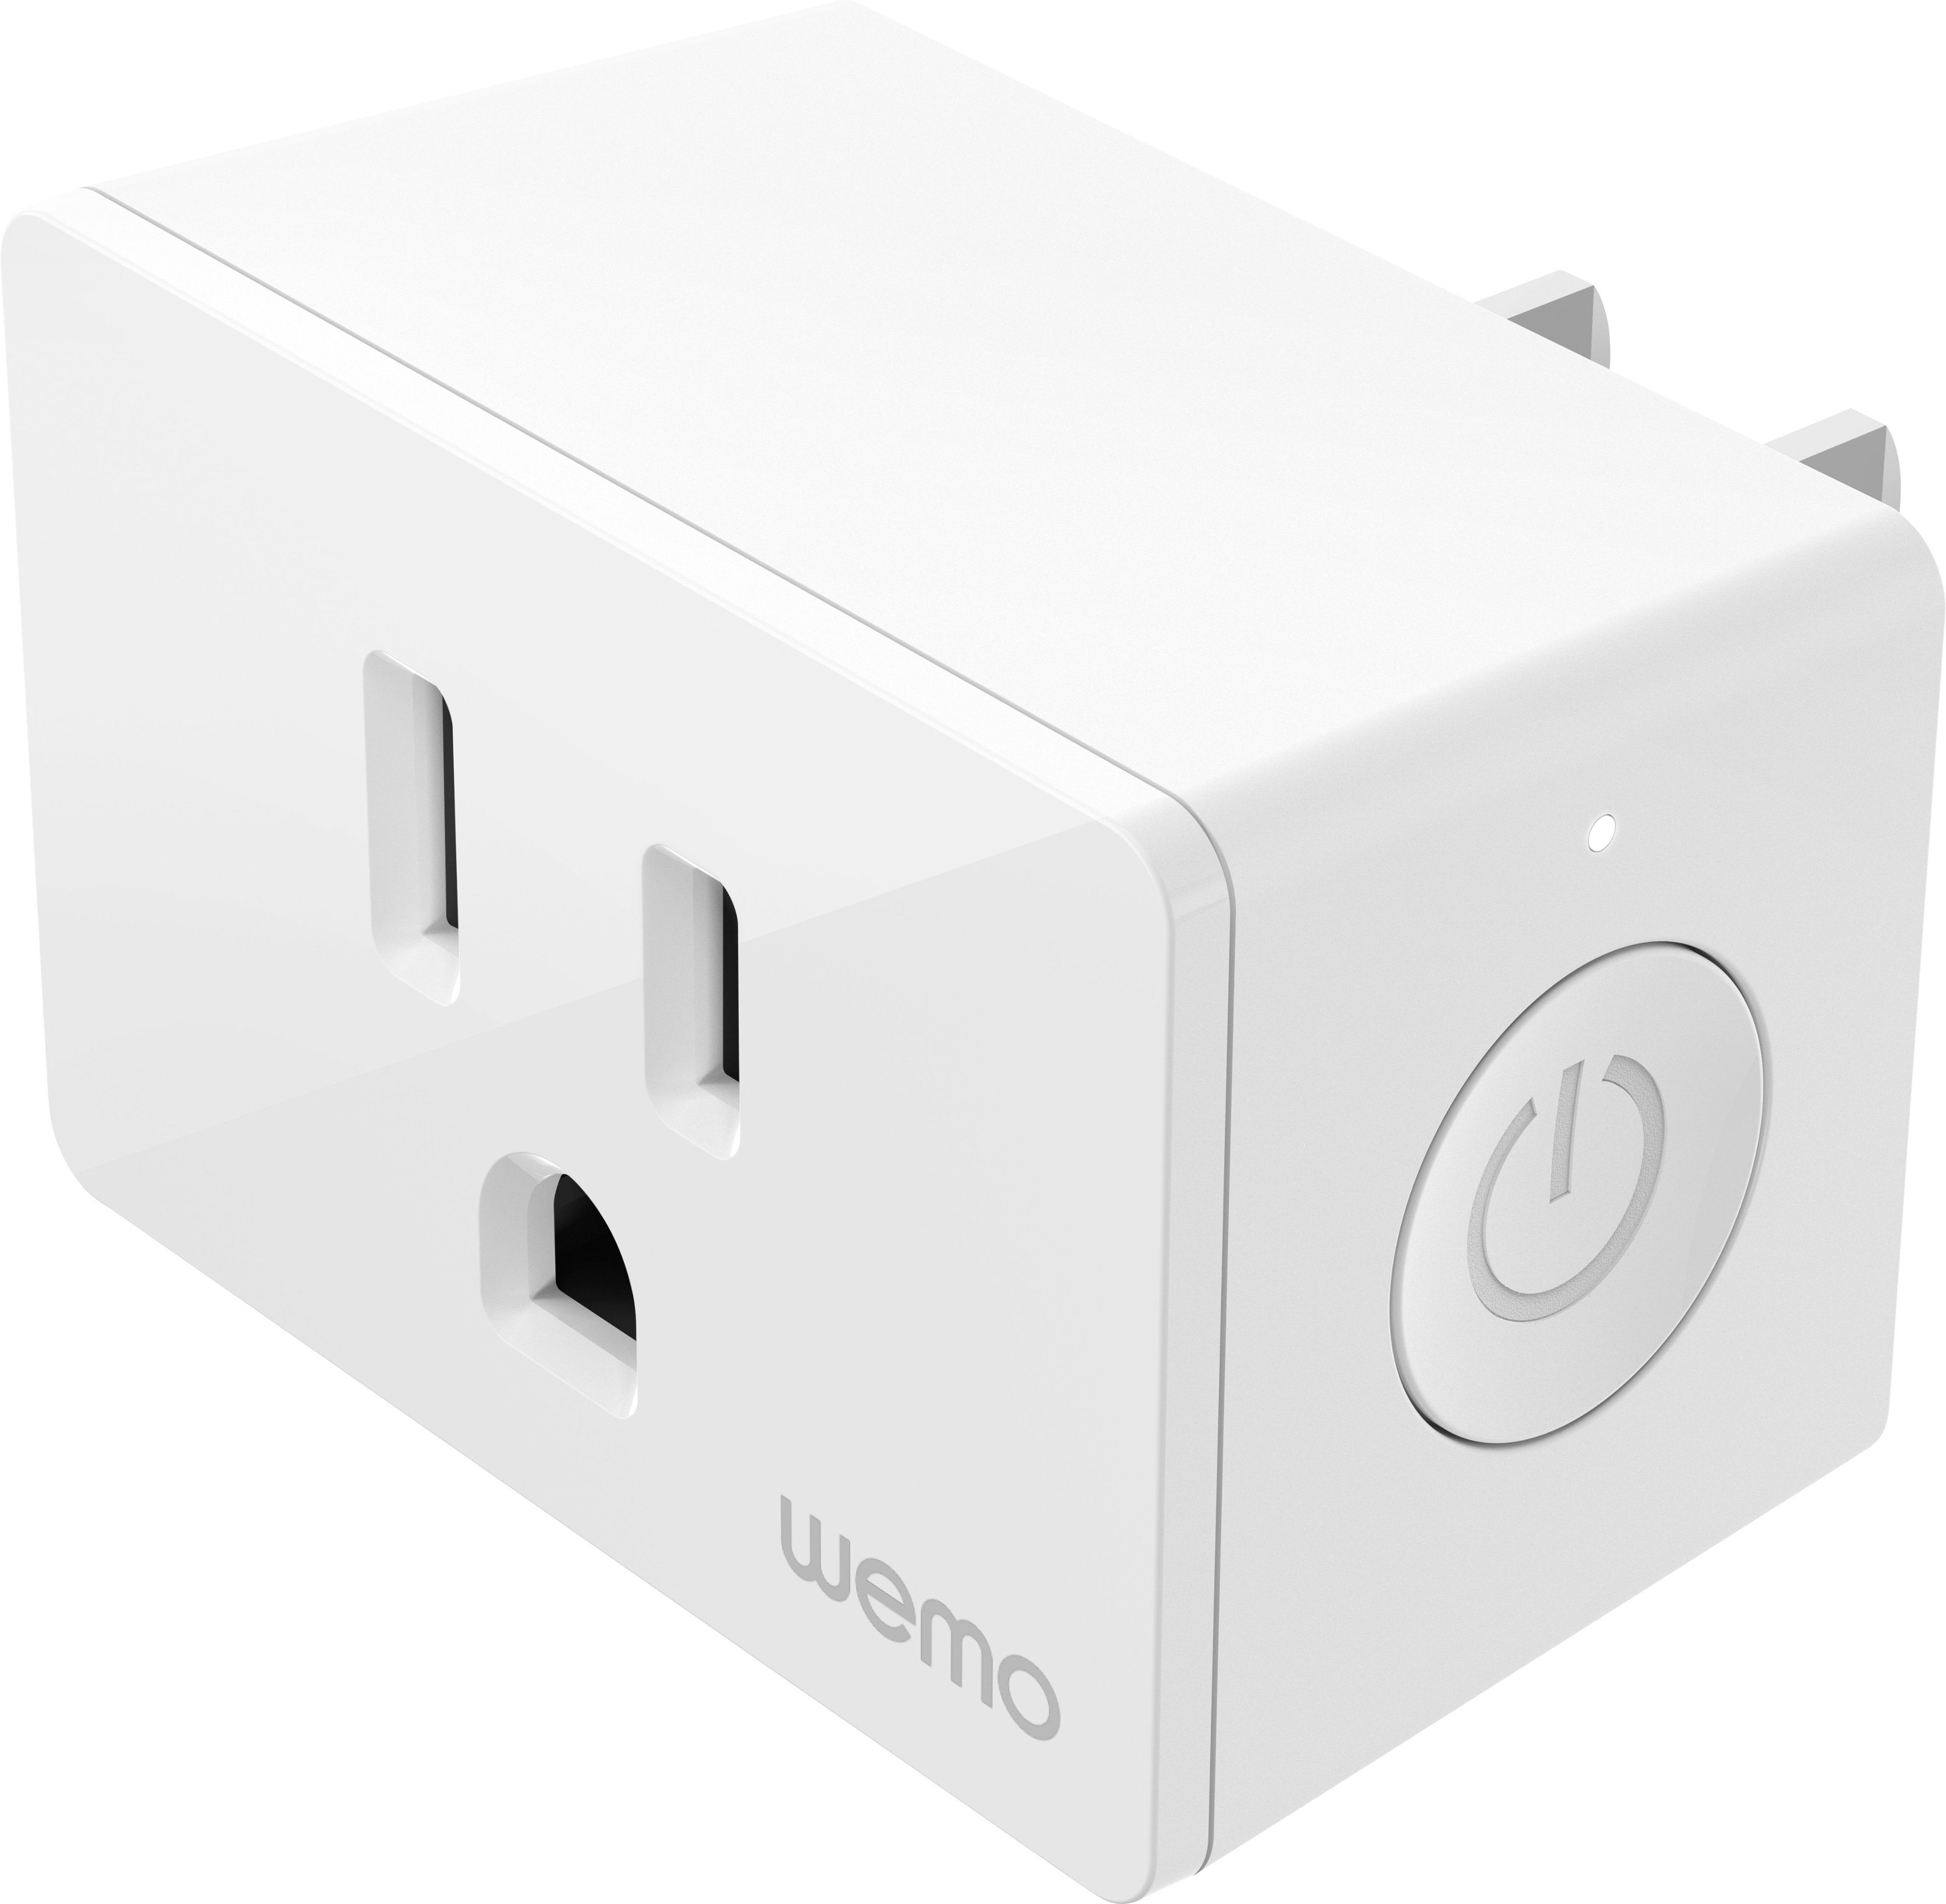 Belkin Wemo Mini WiFi Smart Plug, No Hub Required, White, 3 Pack